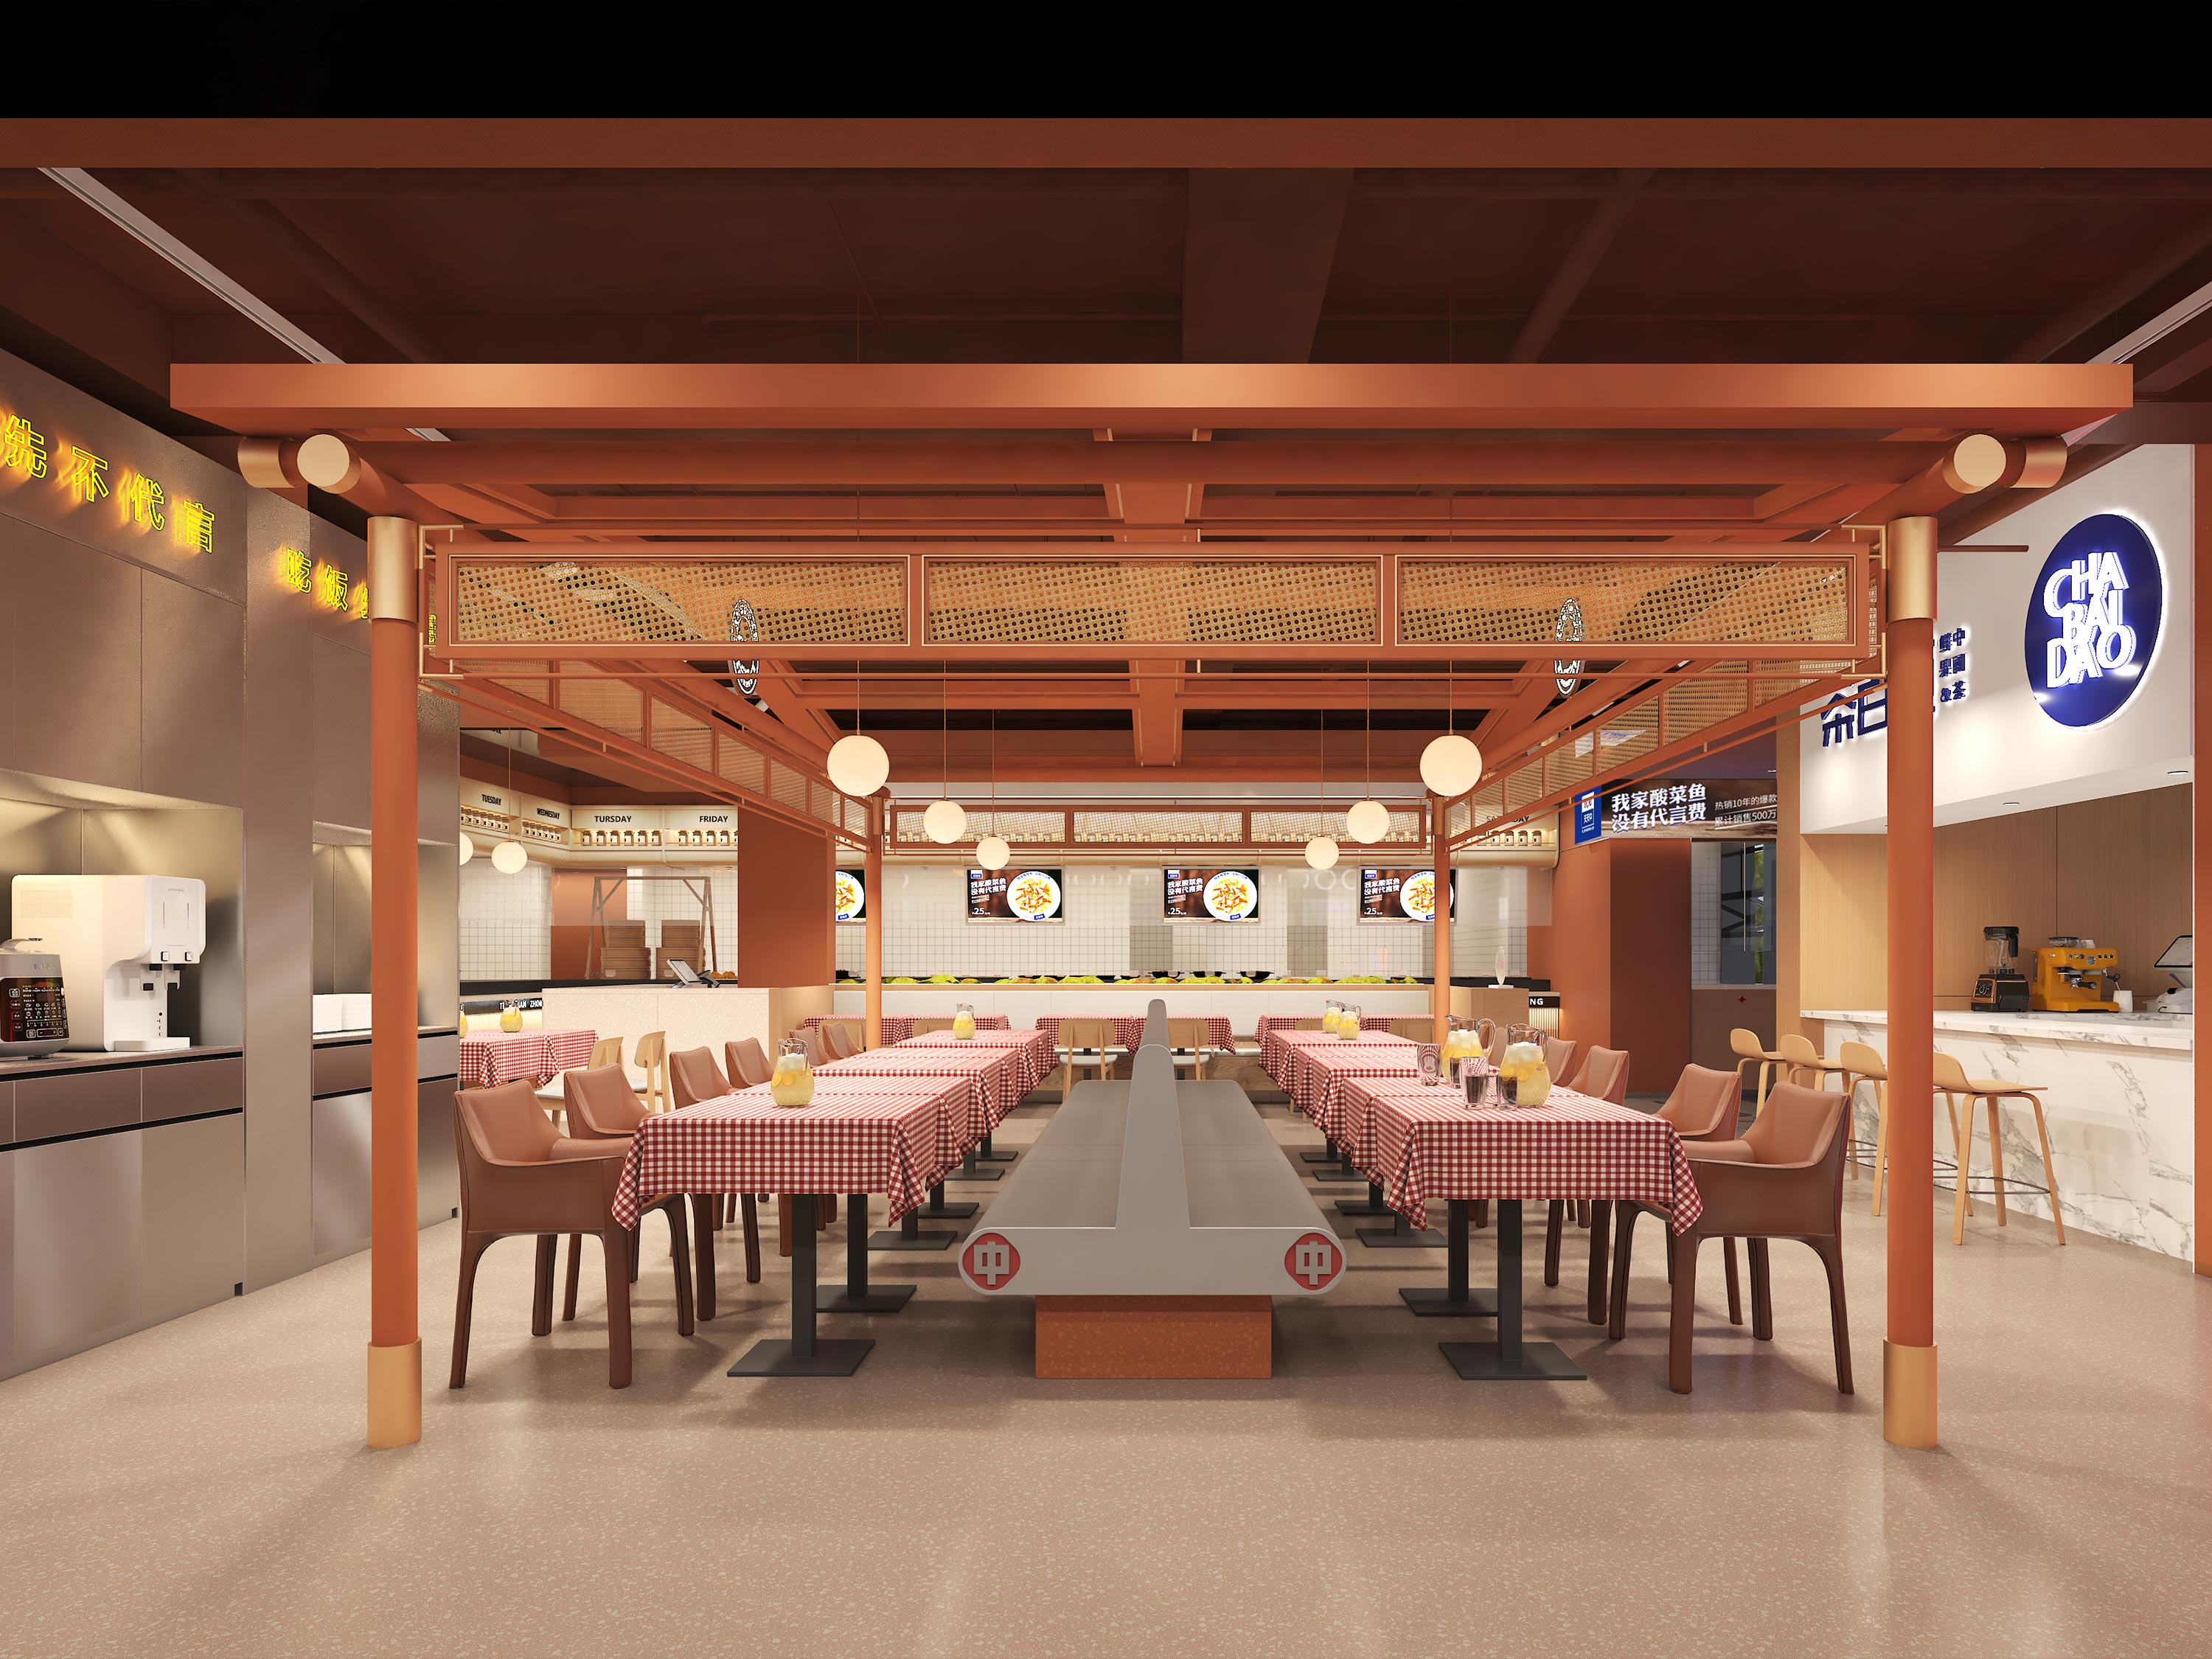 雪山店天天中餐饮空间设计案例